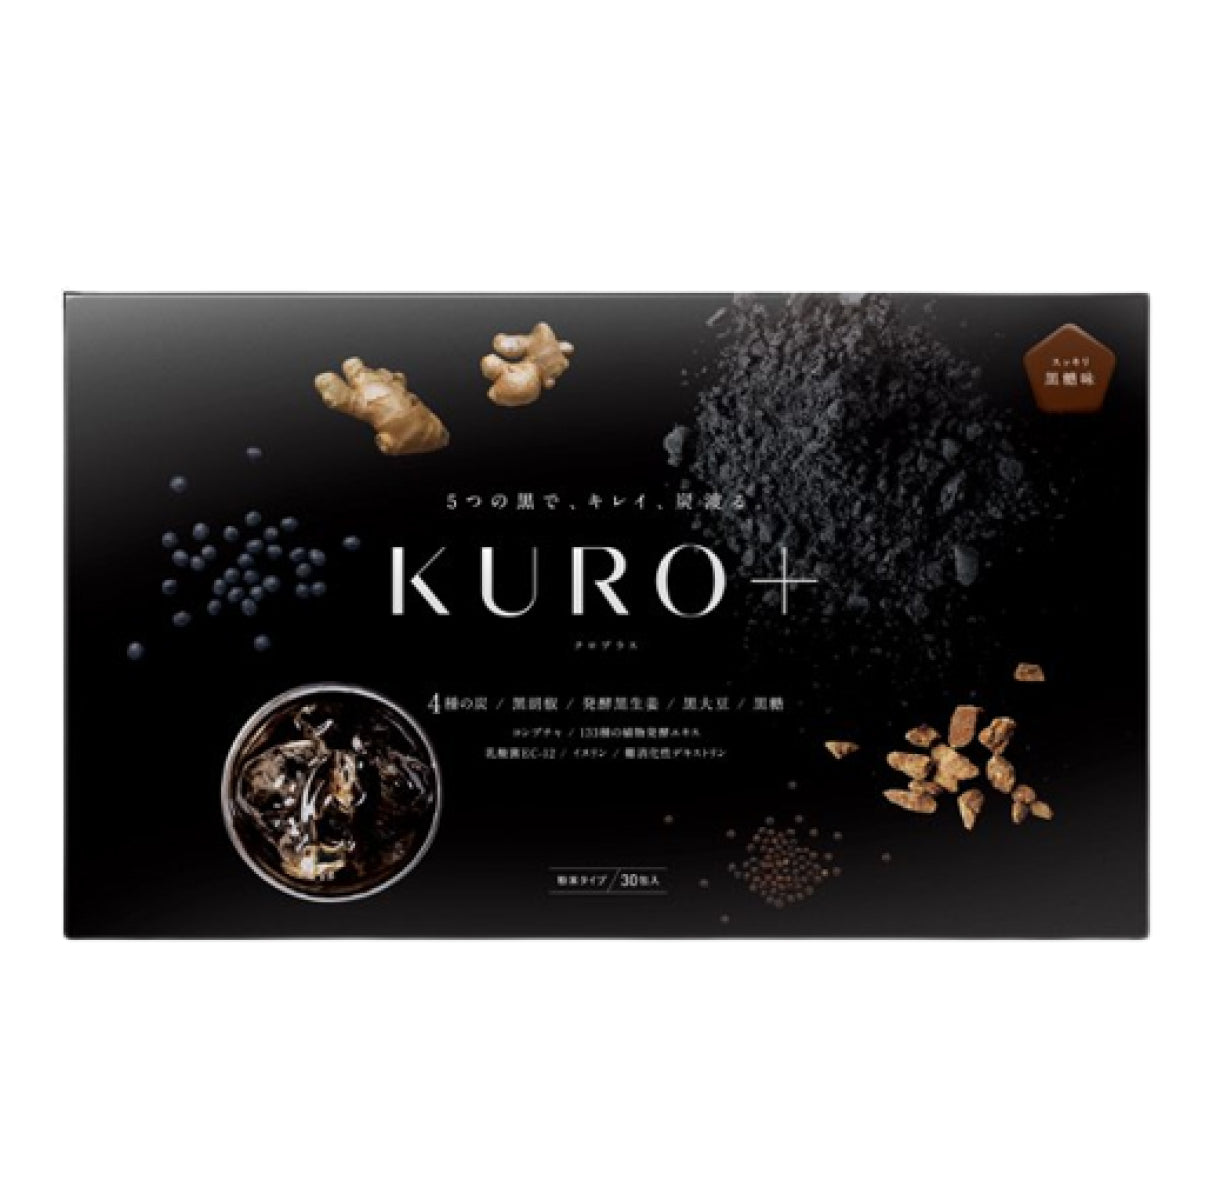 KURO+ Детокс Kuro+ японська дієта - безпечне зниження ваги,очищення організму 30 стіків